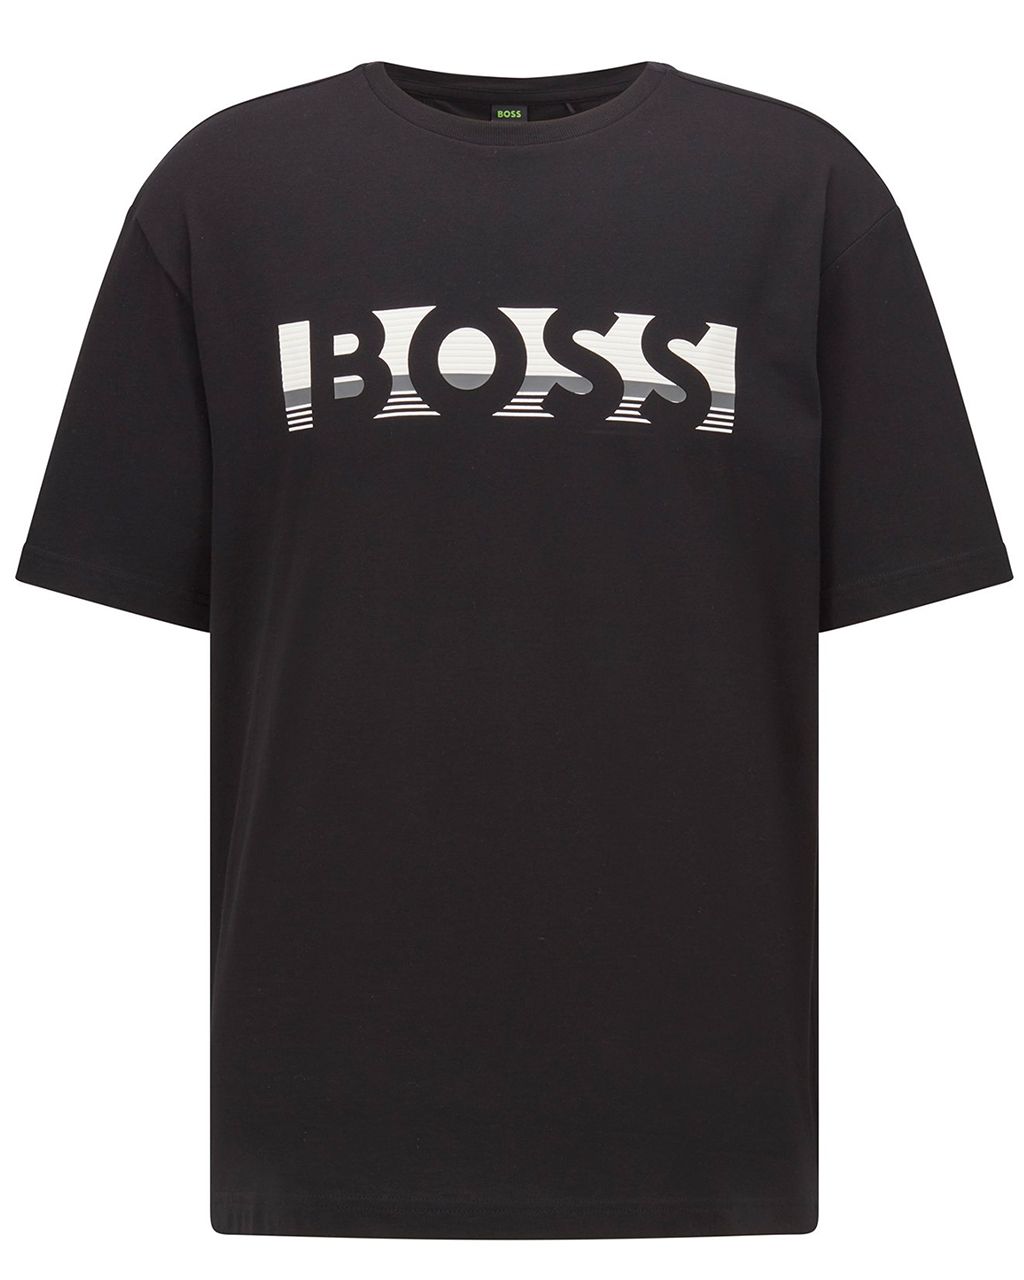 Hugo Boss Leisure Tee 1 T-shirt KM Zwart 076734-001-L